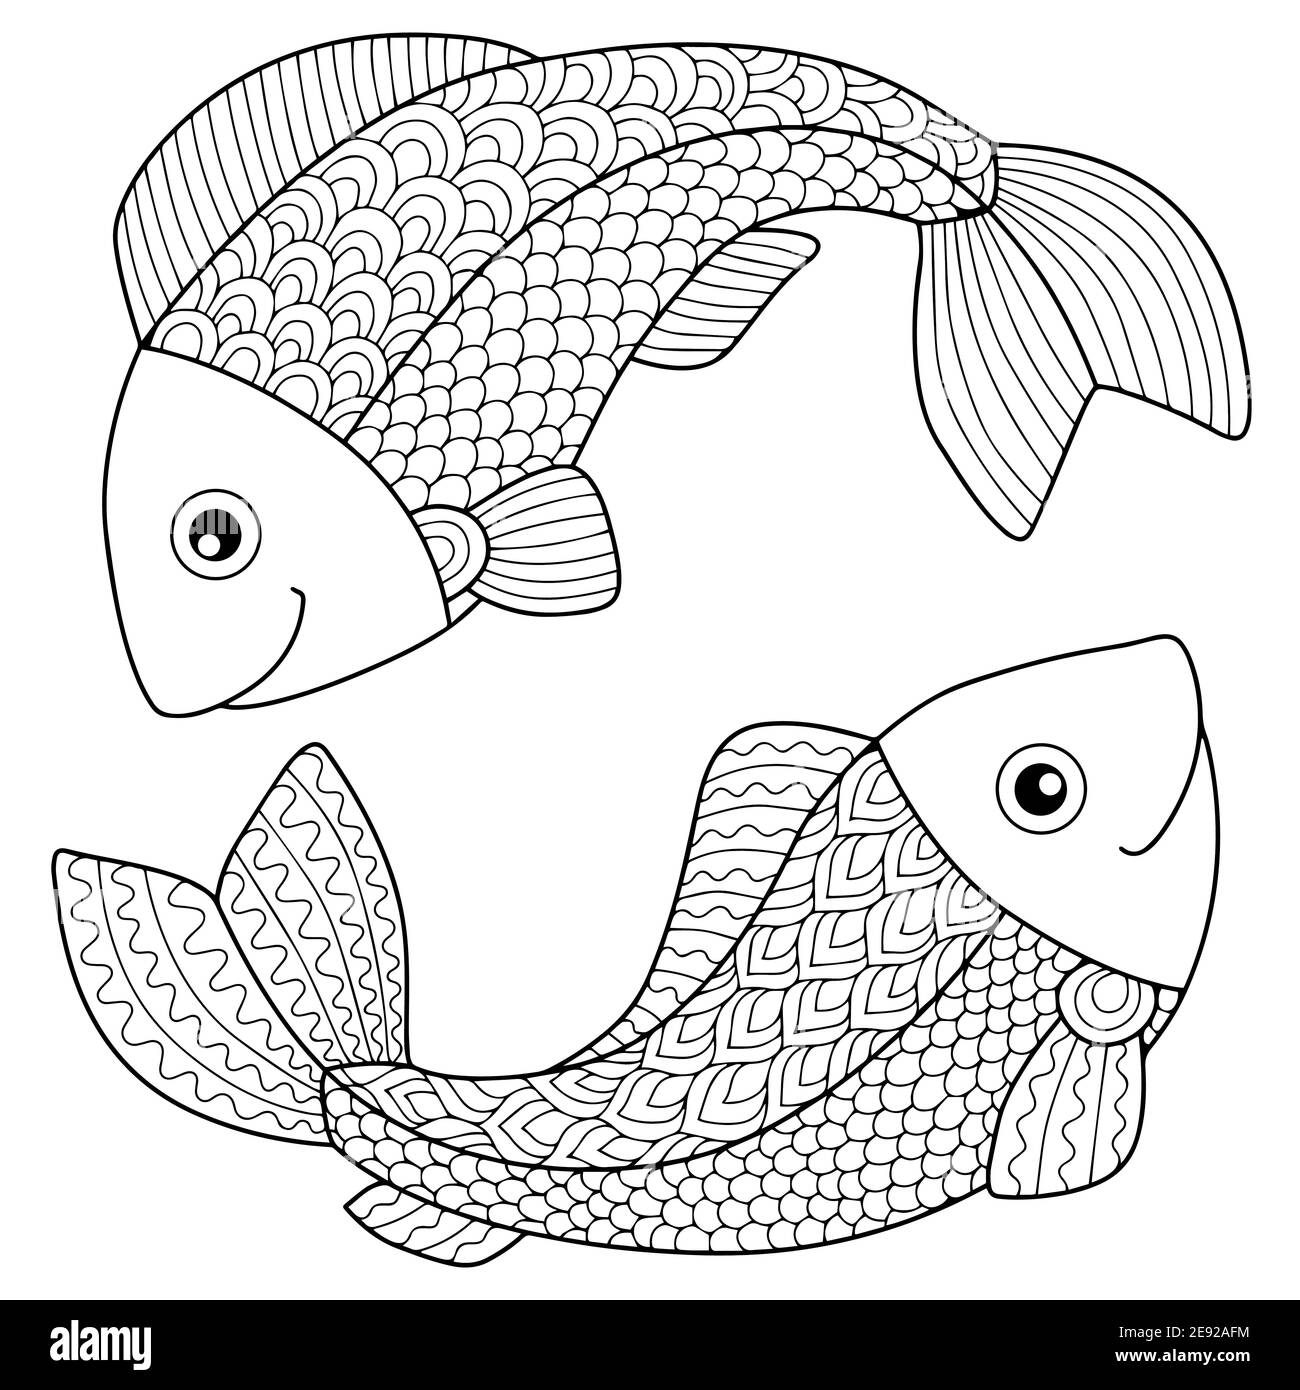 Vektor Bild für Erwachsene. Silhouette von Pfeilen und Bogen isoliert auf weißem Hintergrund. Tierkreiszeichen fische. Fisch. Stock Vektor